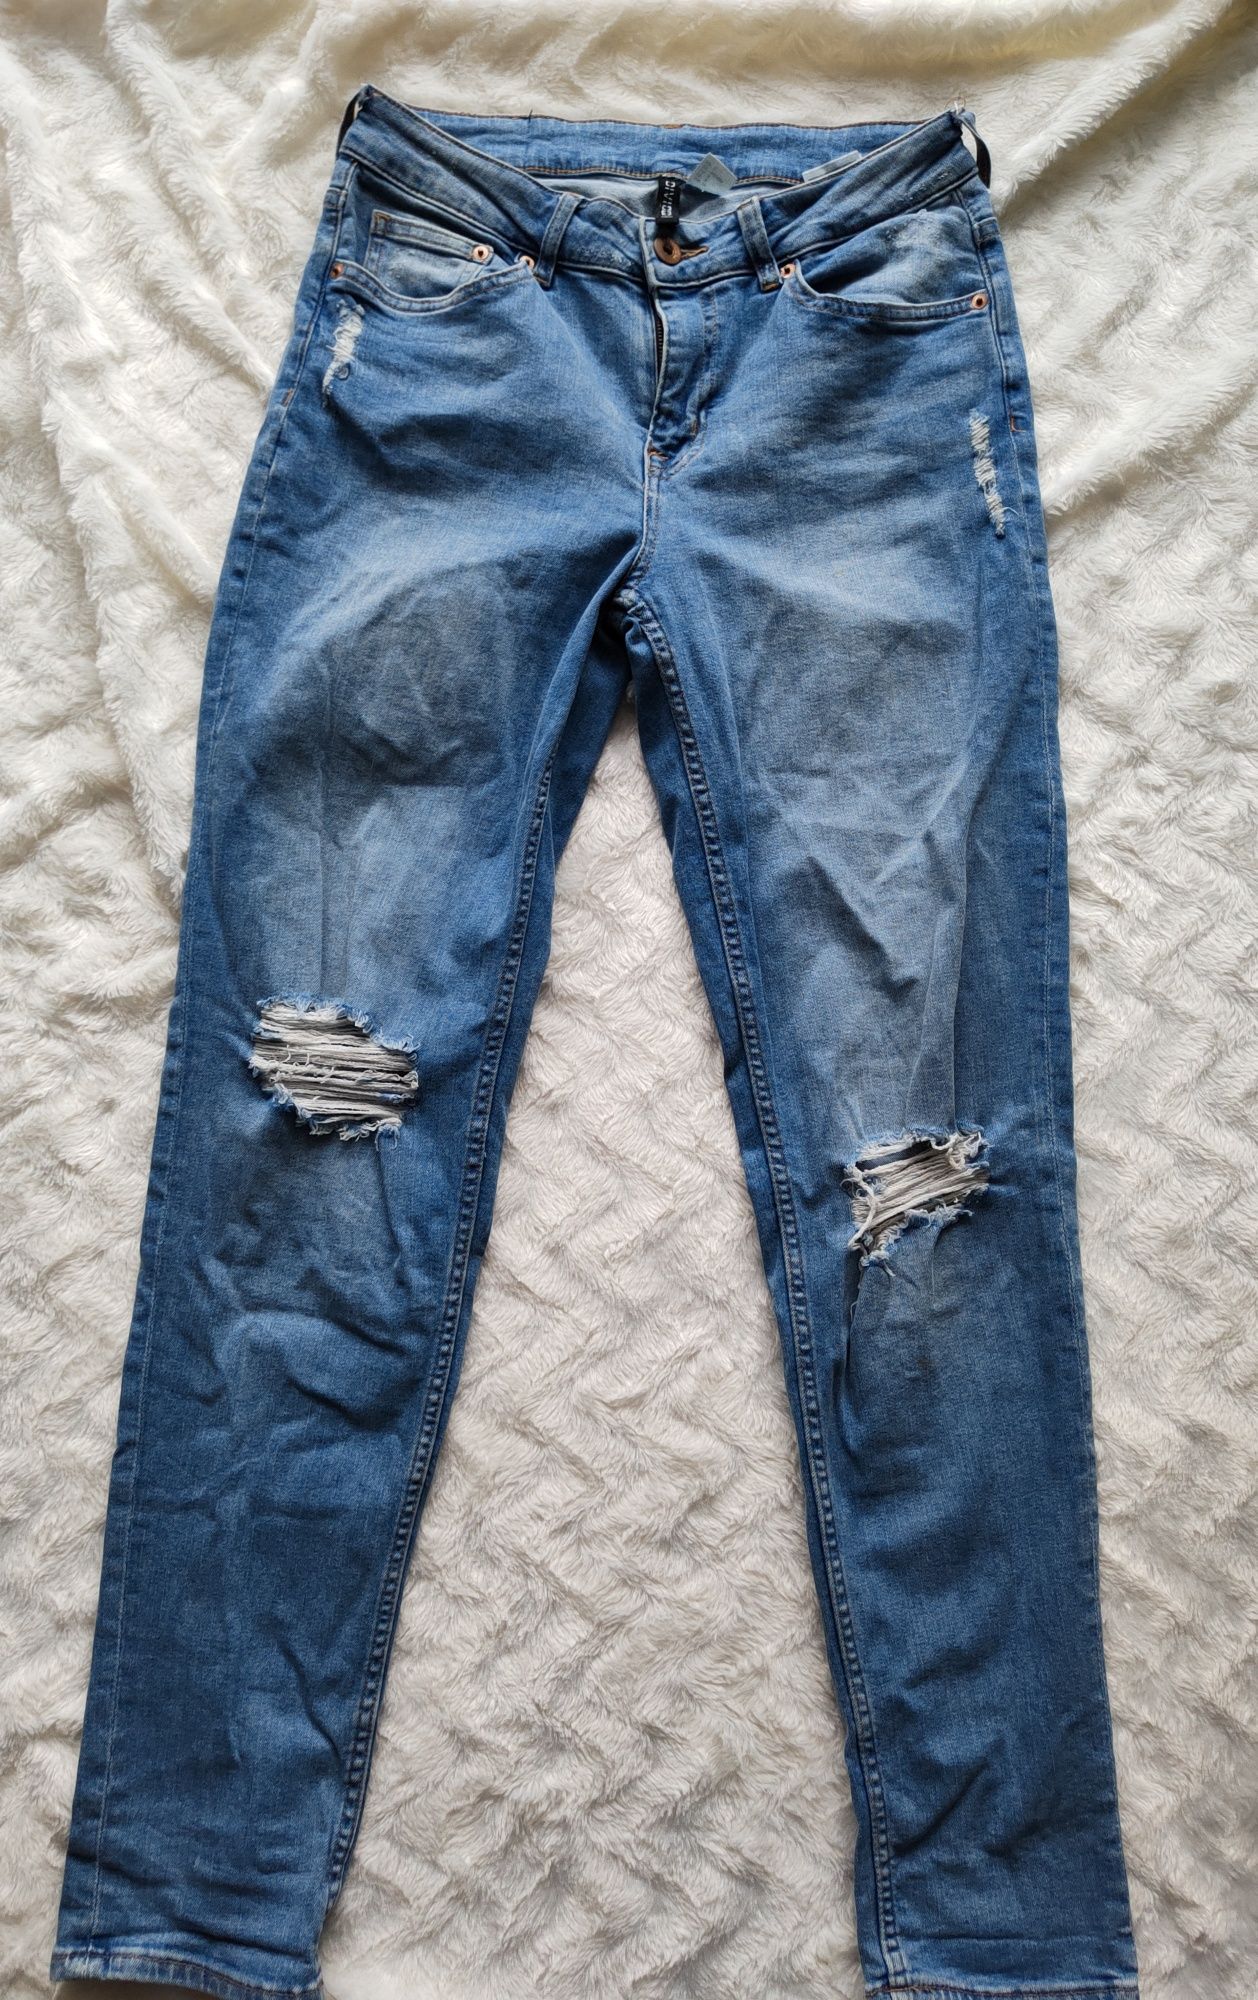 Niebieskie jeansy spodnie damskie z dziurami i rozdarciami H&M 36